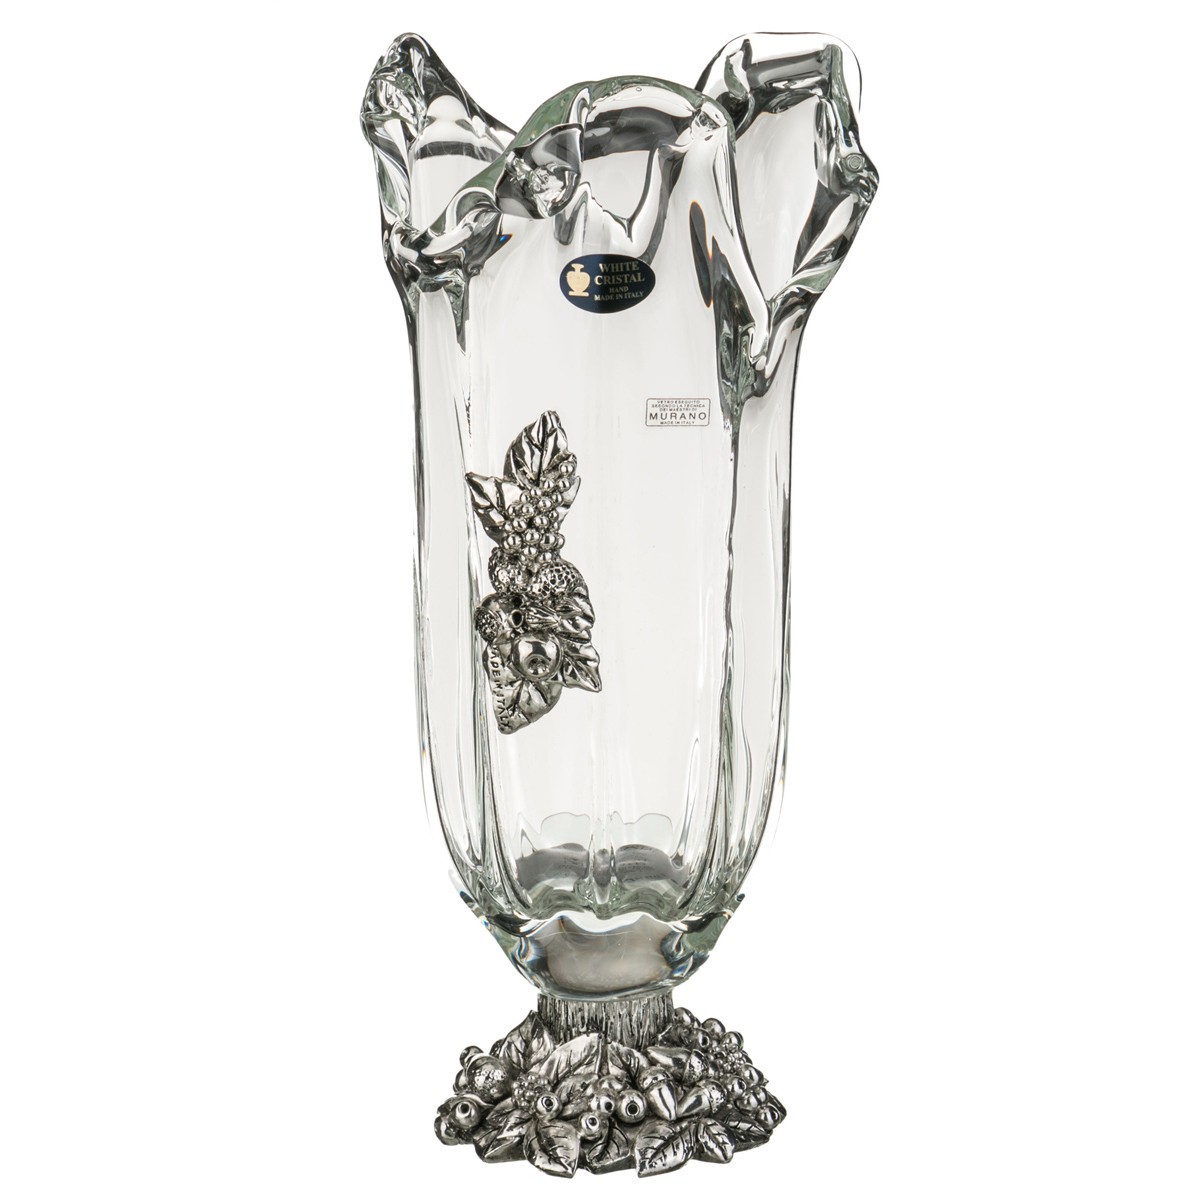 Две новые вазы. Итальянские вазы для цветов. Вазы для цветов 40 см. Ваза декоративная 40см стекло серая. White Crystal ваза 40 см.